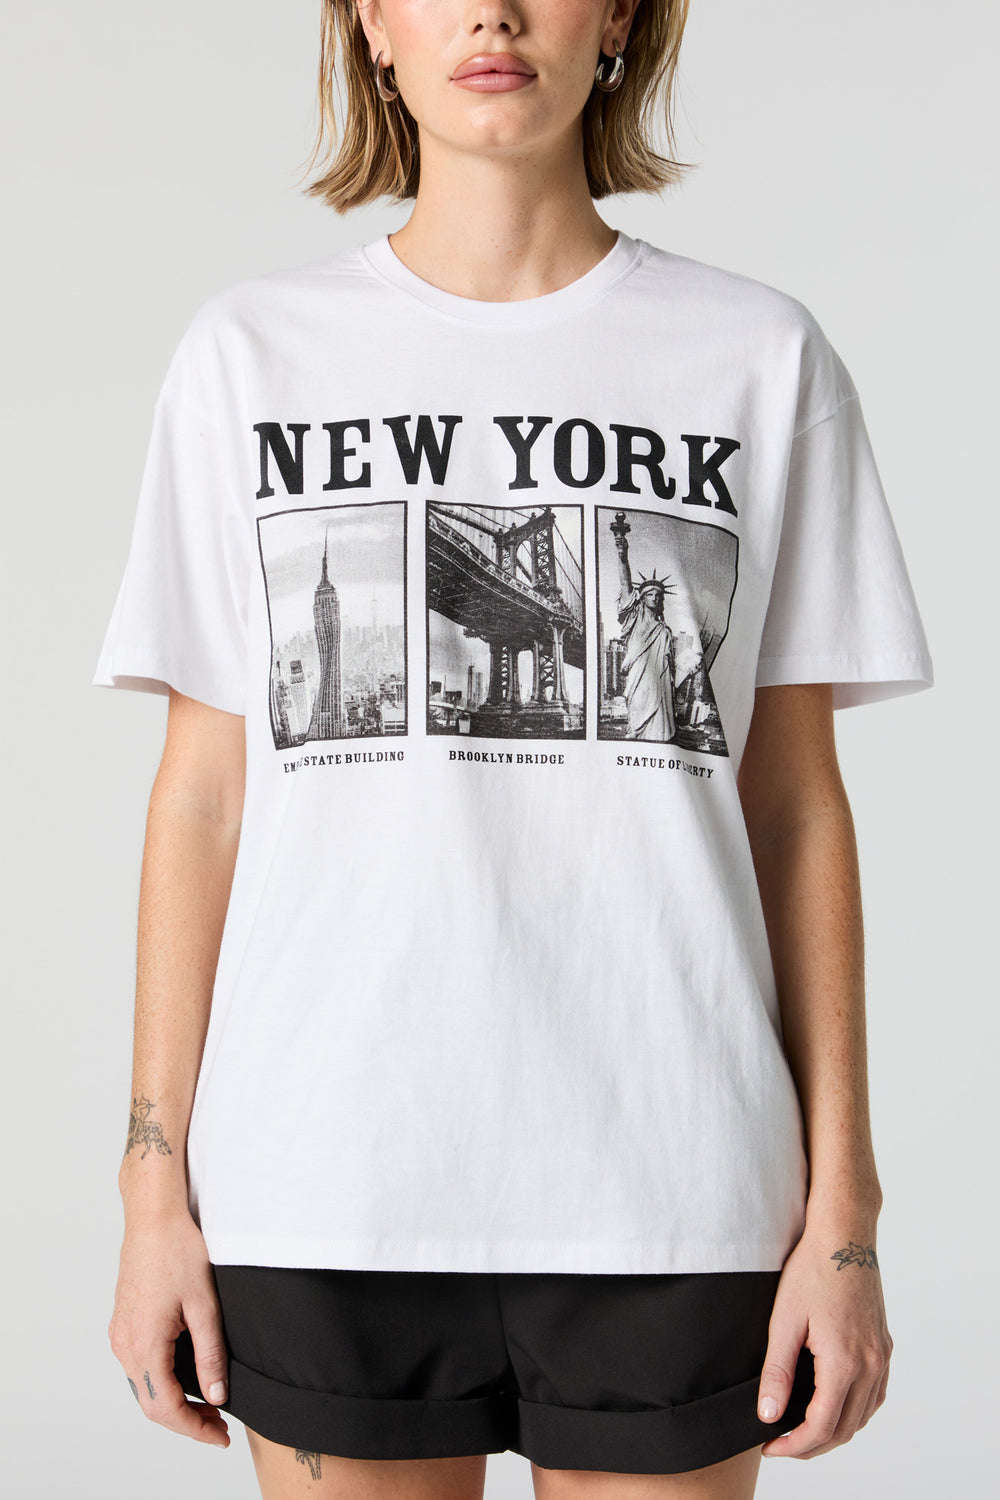 New York Tourist Spots Graphic Boyfriend T-Shirt New York Tourist Spots Graphic Boyfriend T-Shirt 1